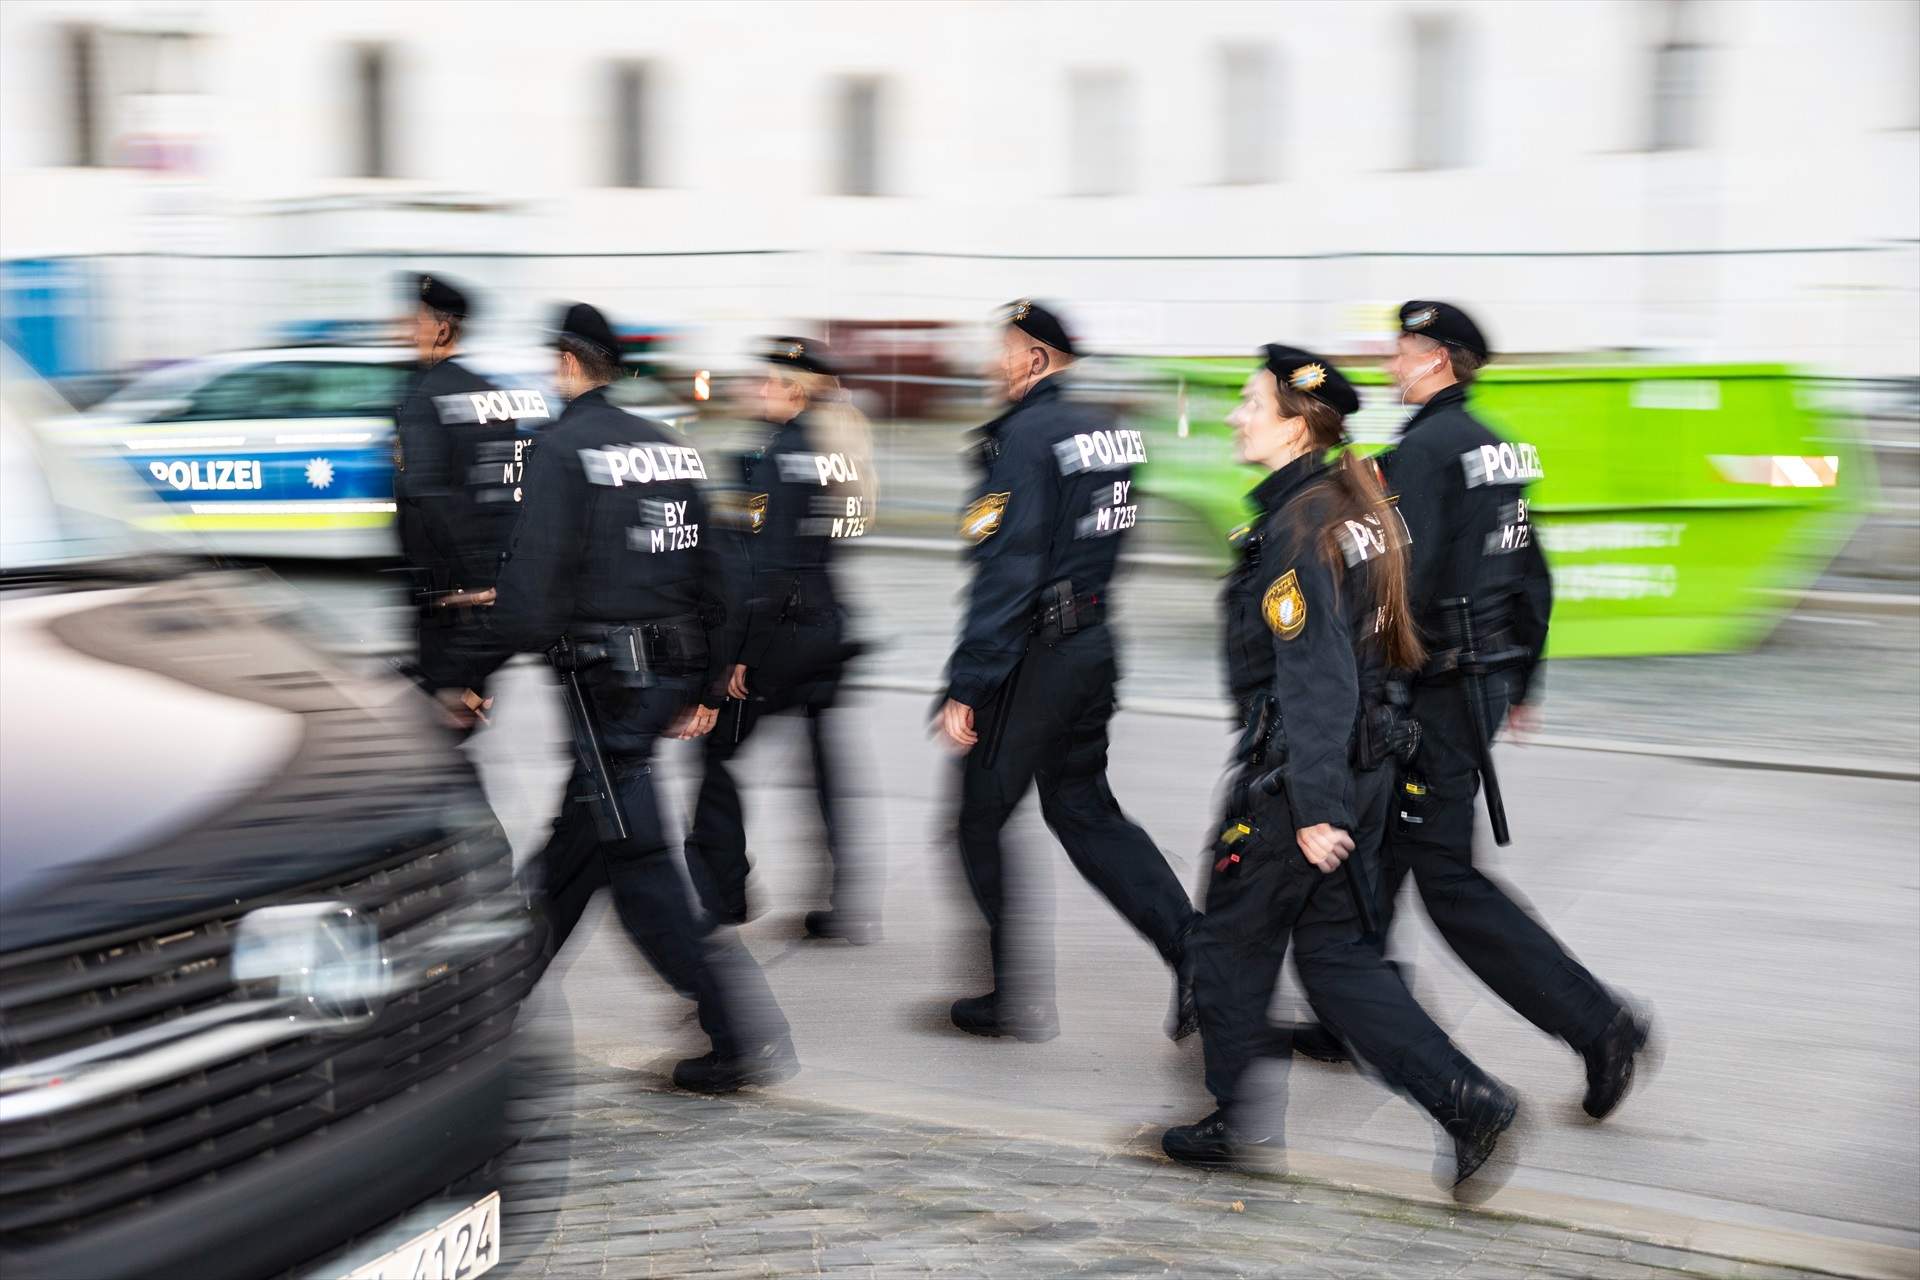 Nou atac a Alemanya: un tiroteig deixa quatre ferits greus i el pistoler està fugit